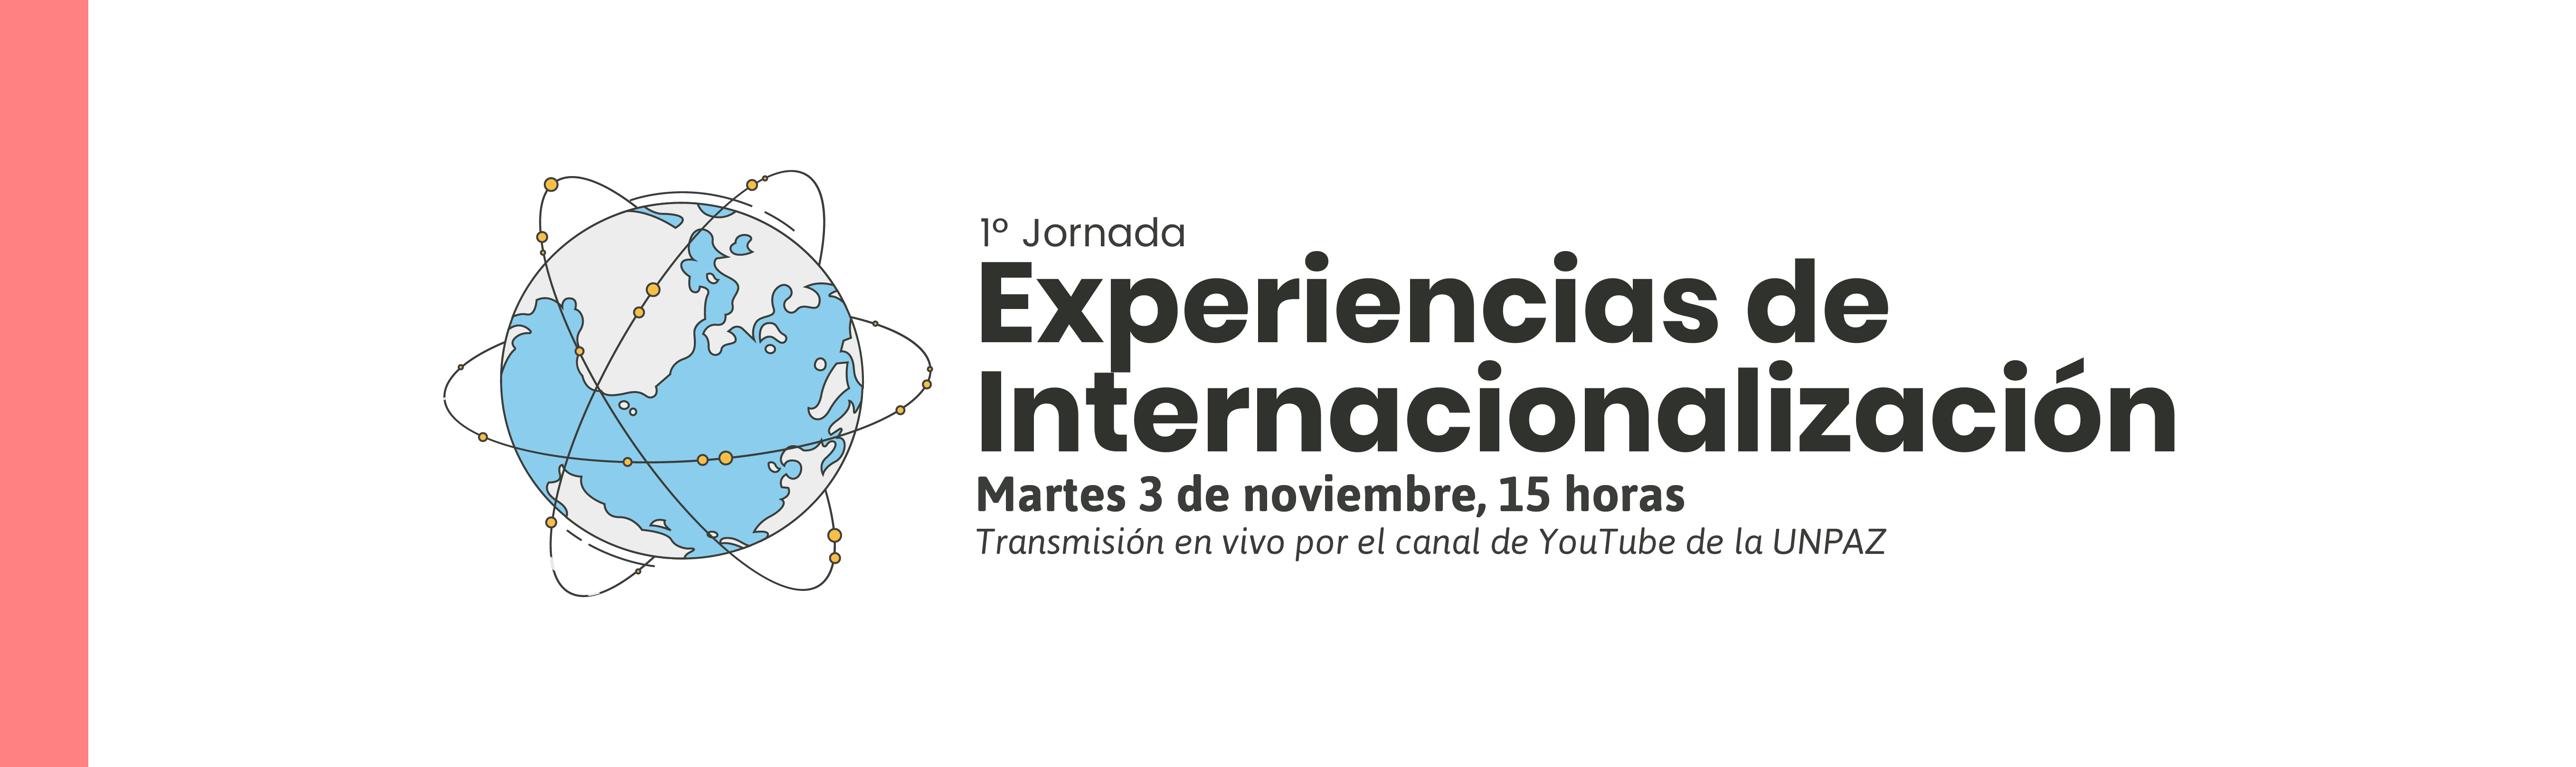 1º Jornada Experiencias de Internacionalización